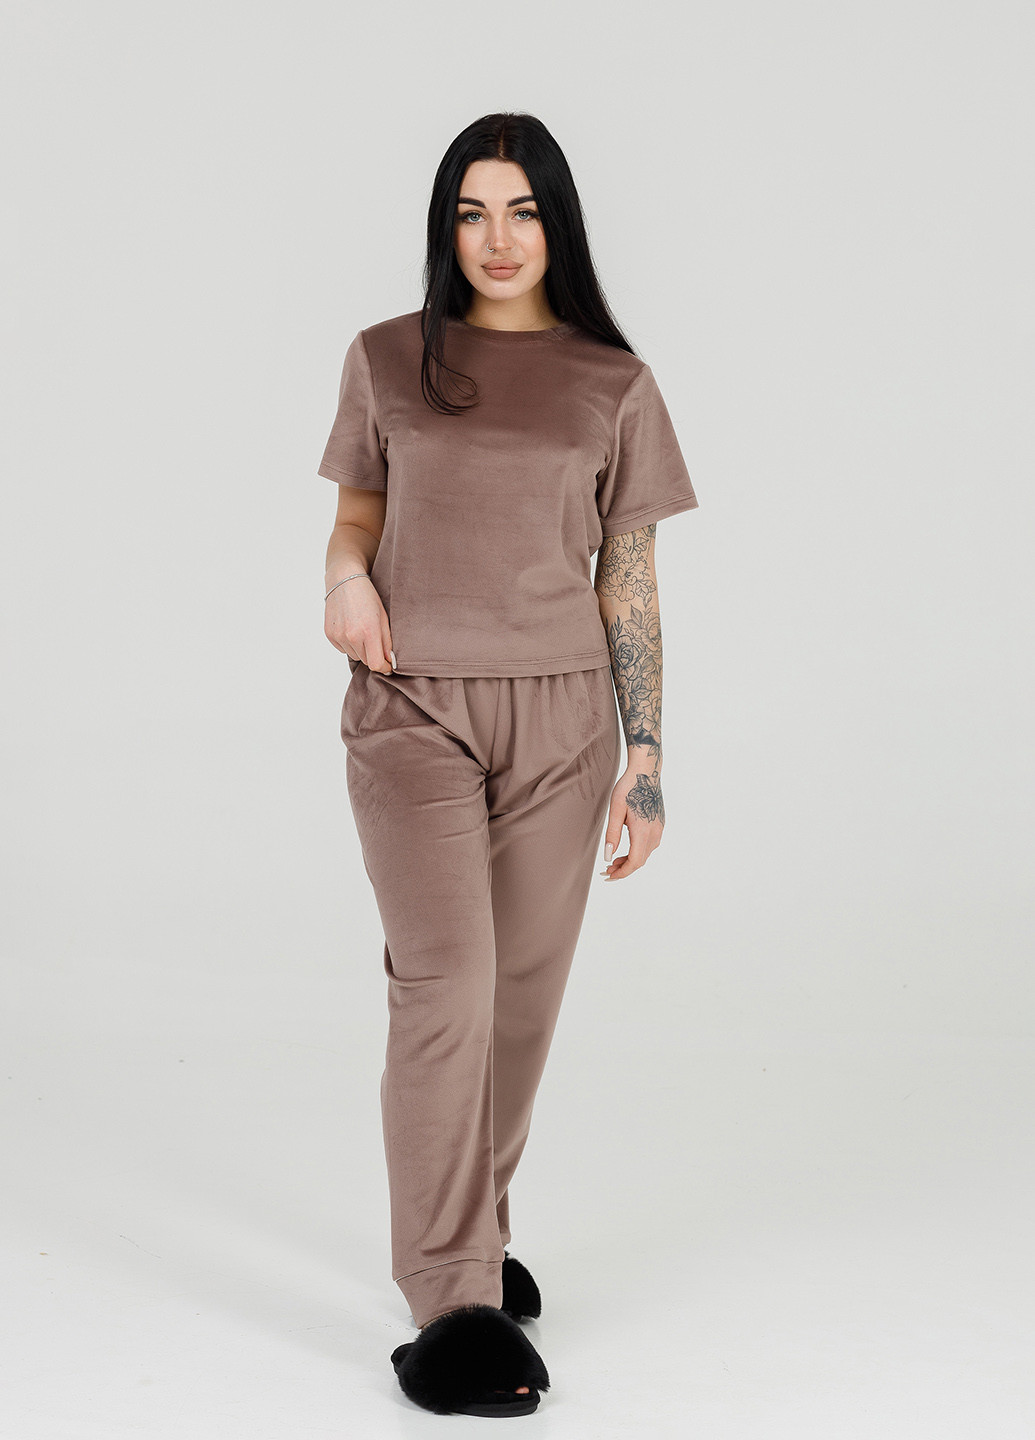 Темно-коричневая всесезон велюровая пижама (футблка+брюки) мокко футболка + брюки SONTSVIT